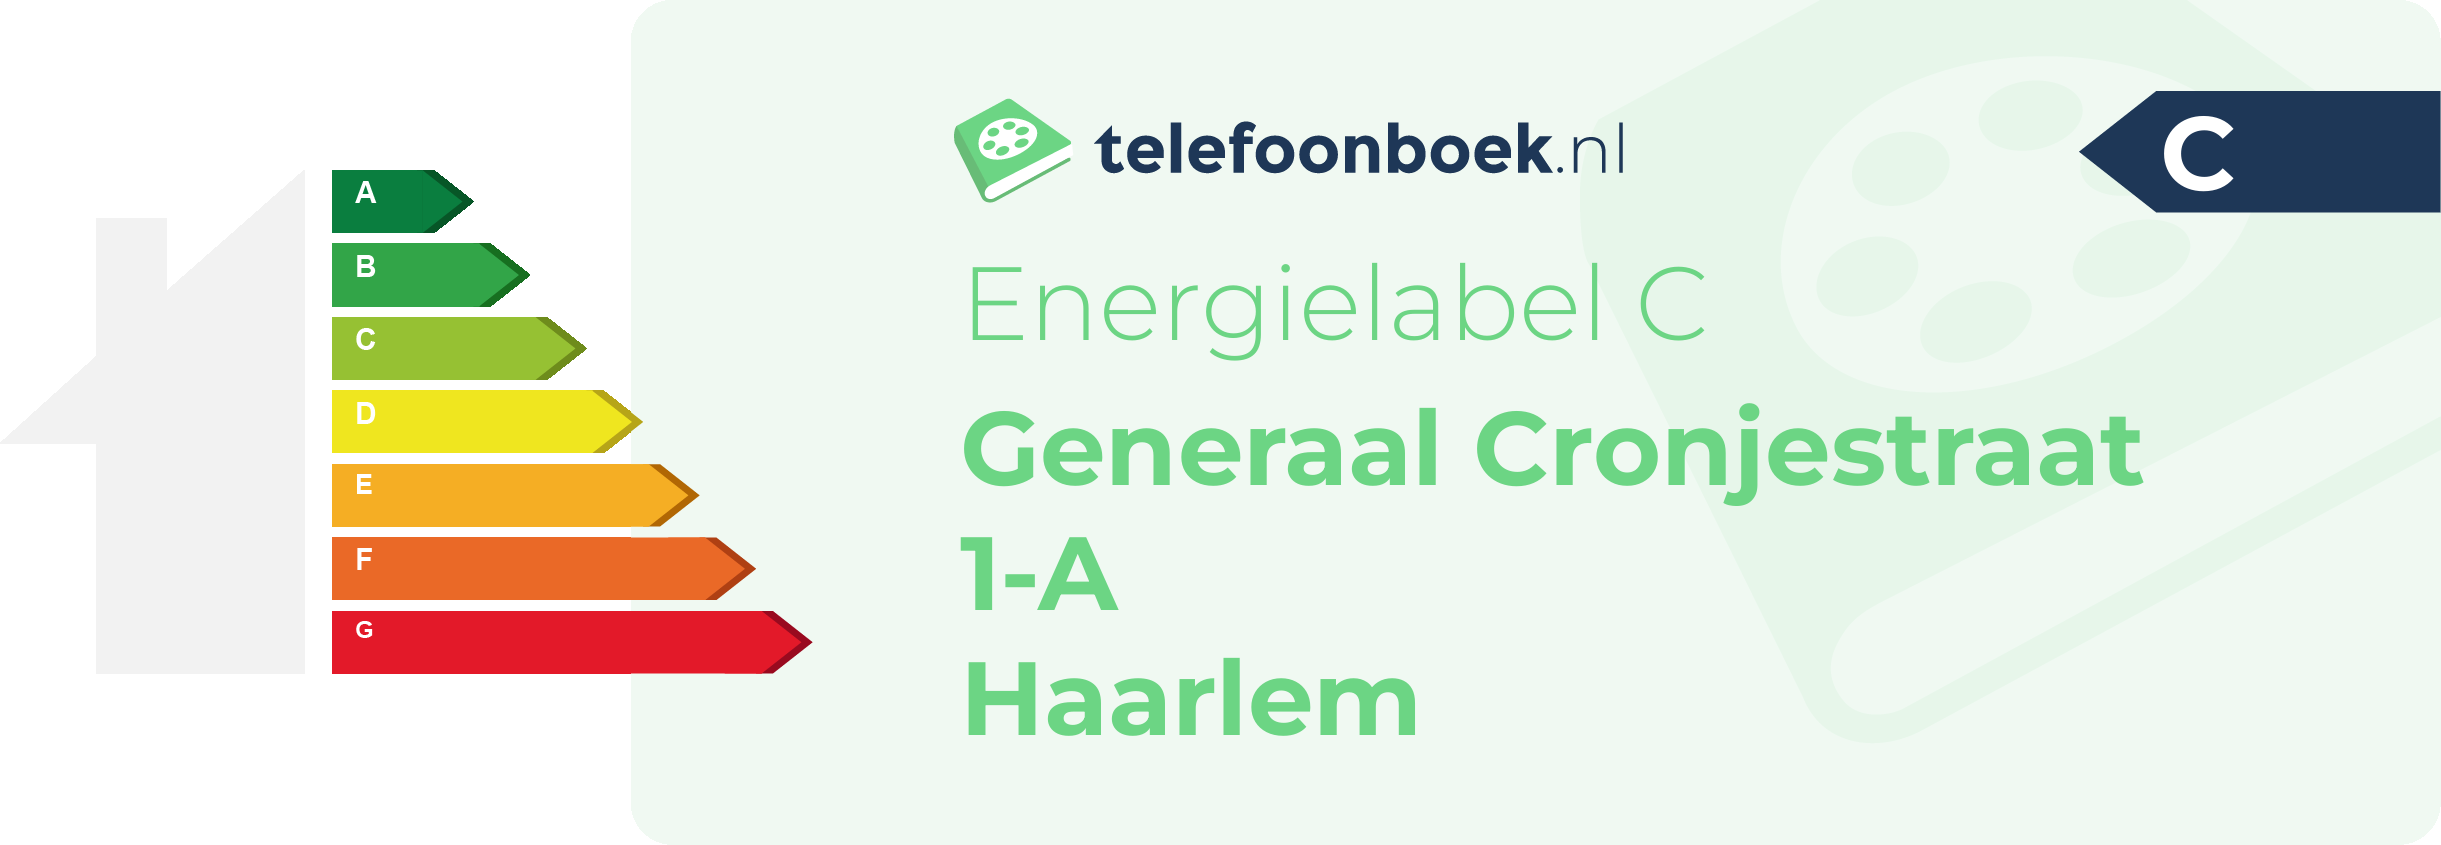 Energielabel Generaal Cronjestraat 1-A Haarlem